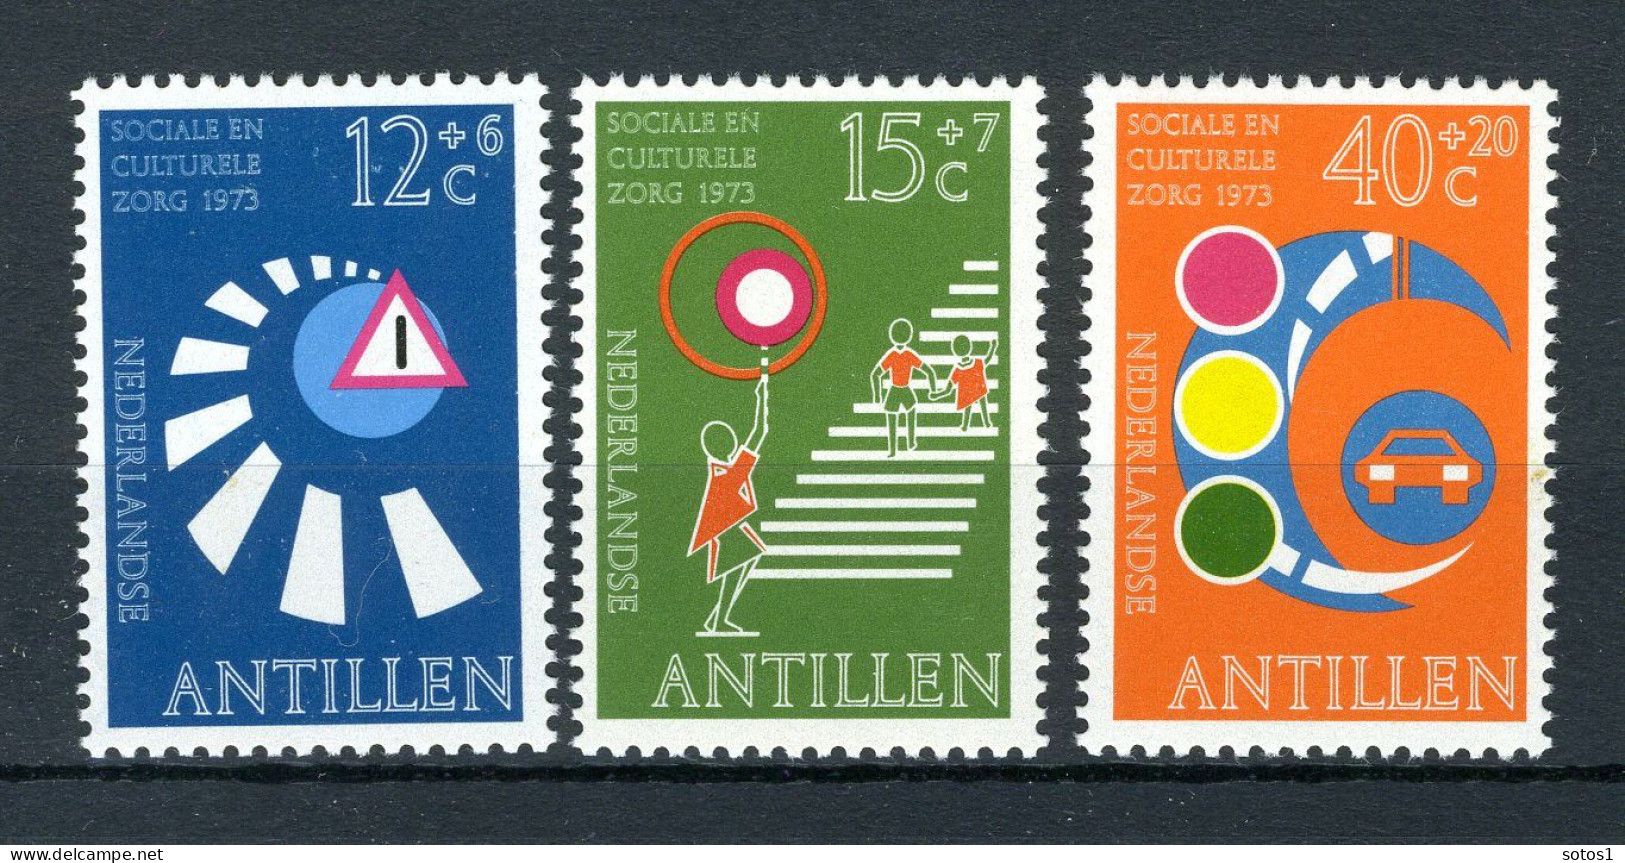 NL. ANTILLEN 469/471 MH 1973 - Cultuur, Verkeersveiligheid. - Niederländische Antillen, Curaçao, Aruba